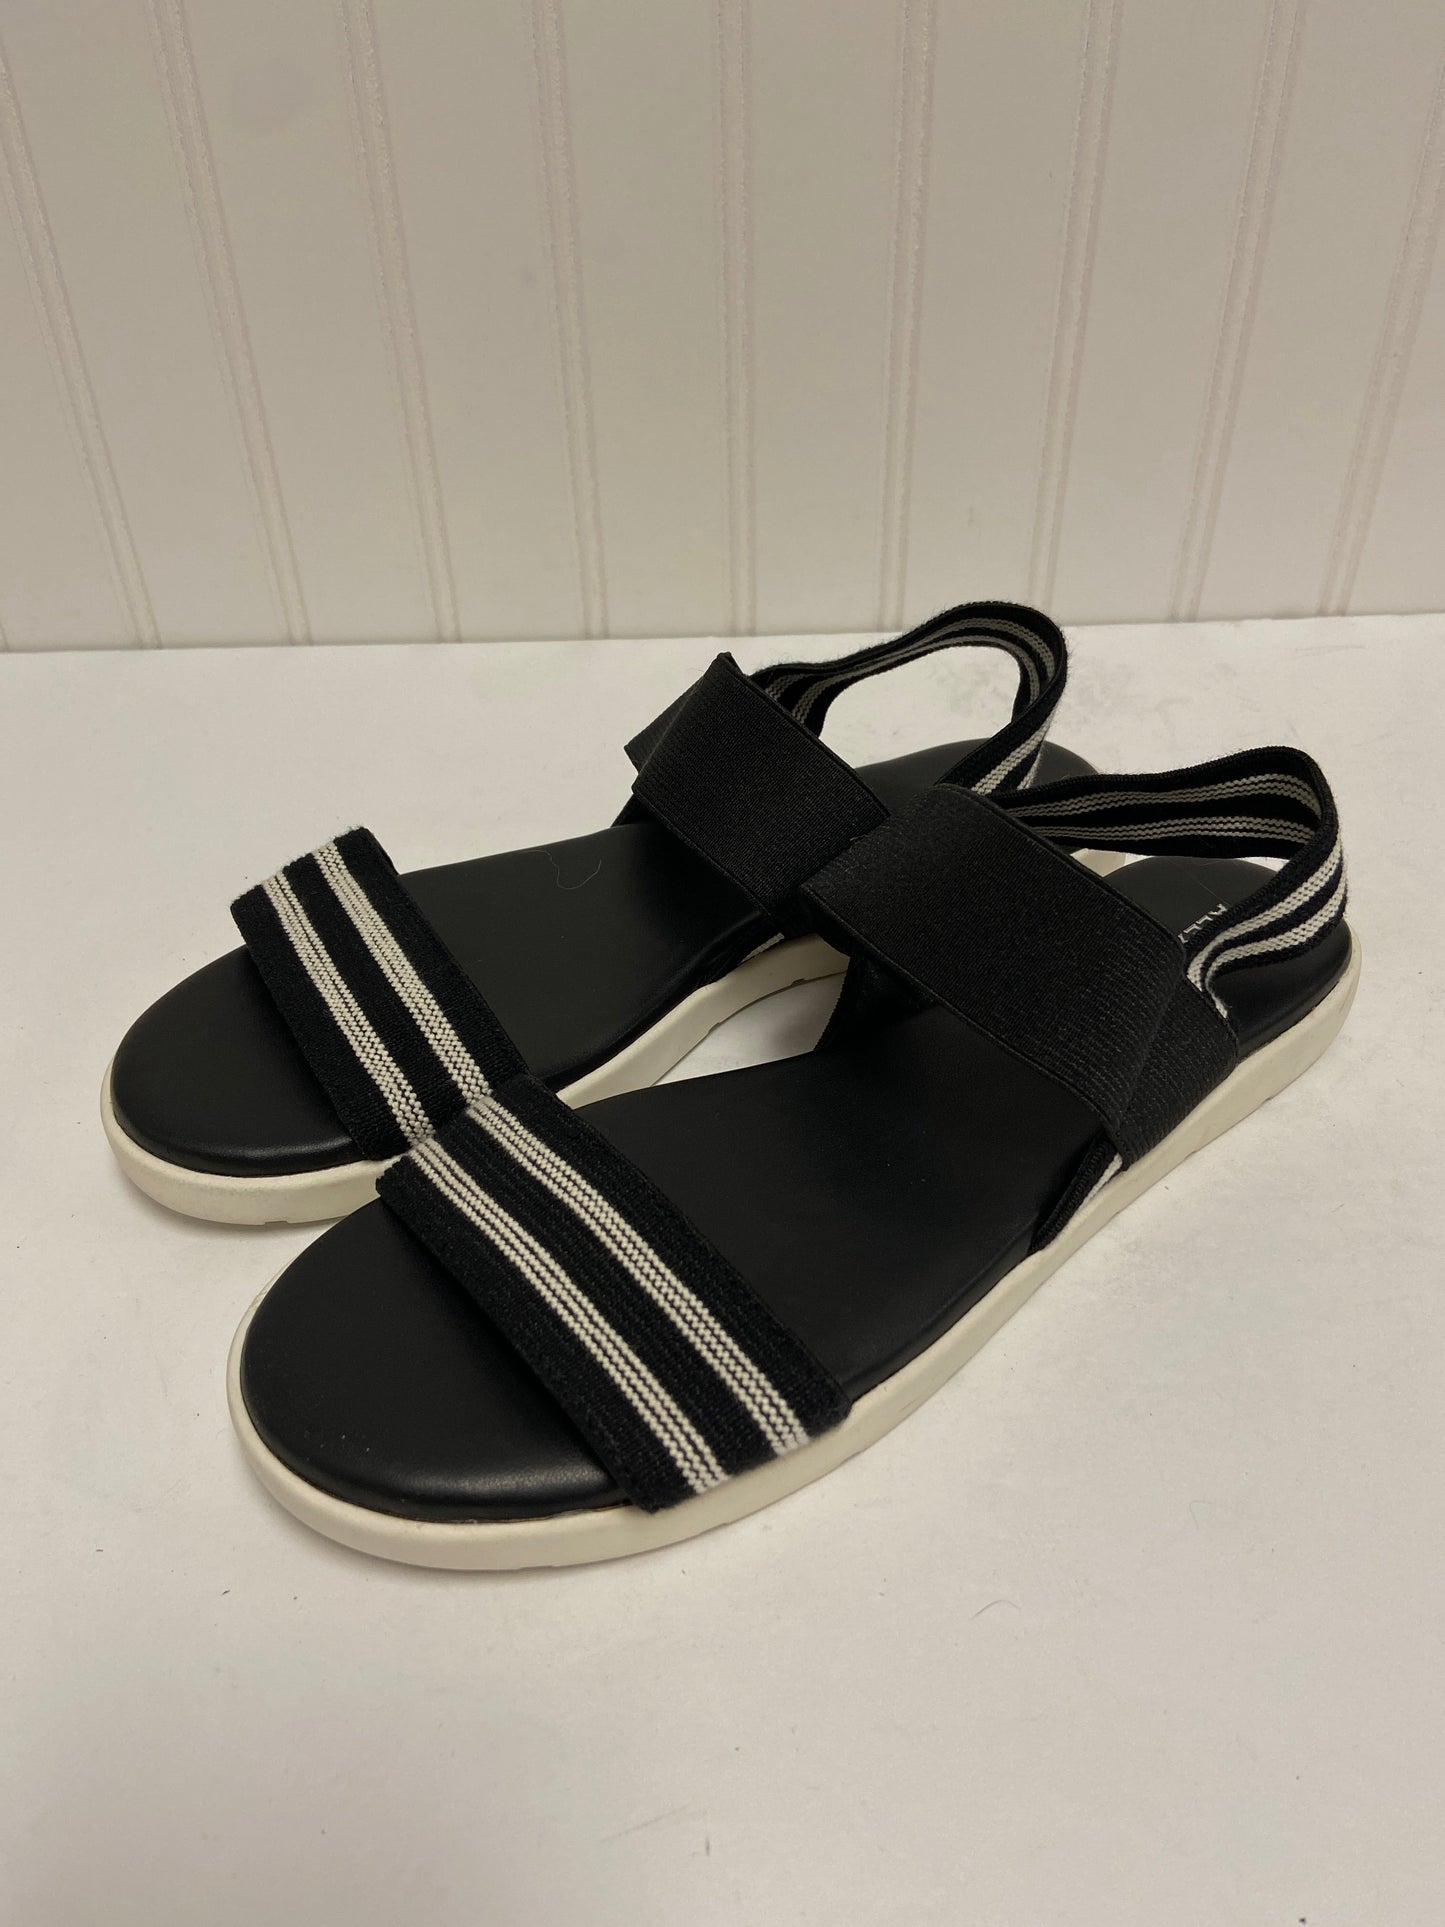 Black & White Sandals Flats Alex Marie, Size 8